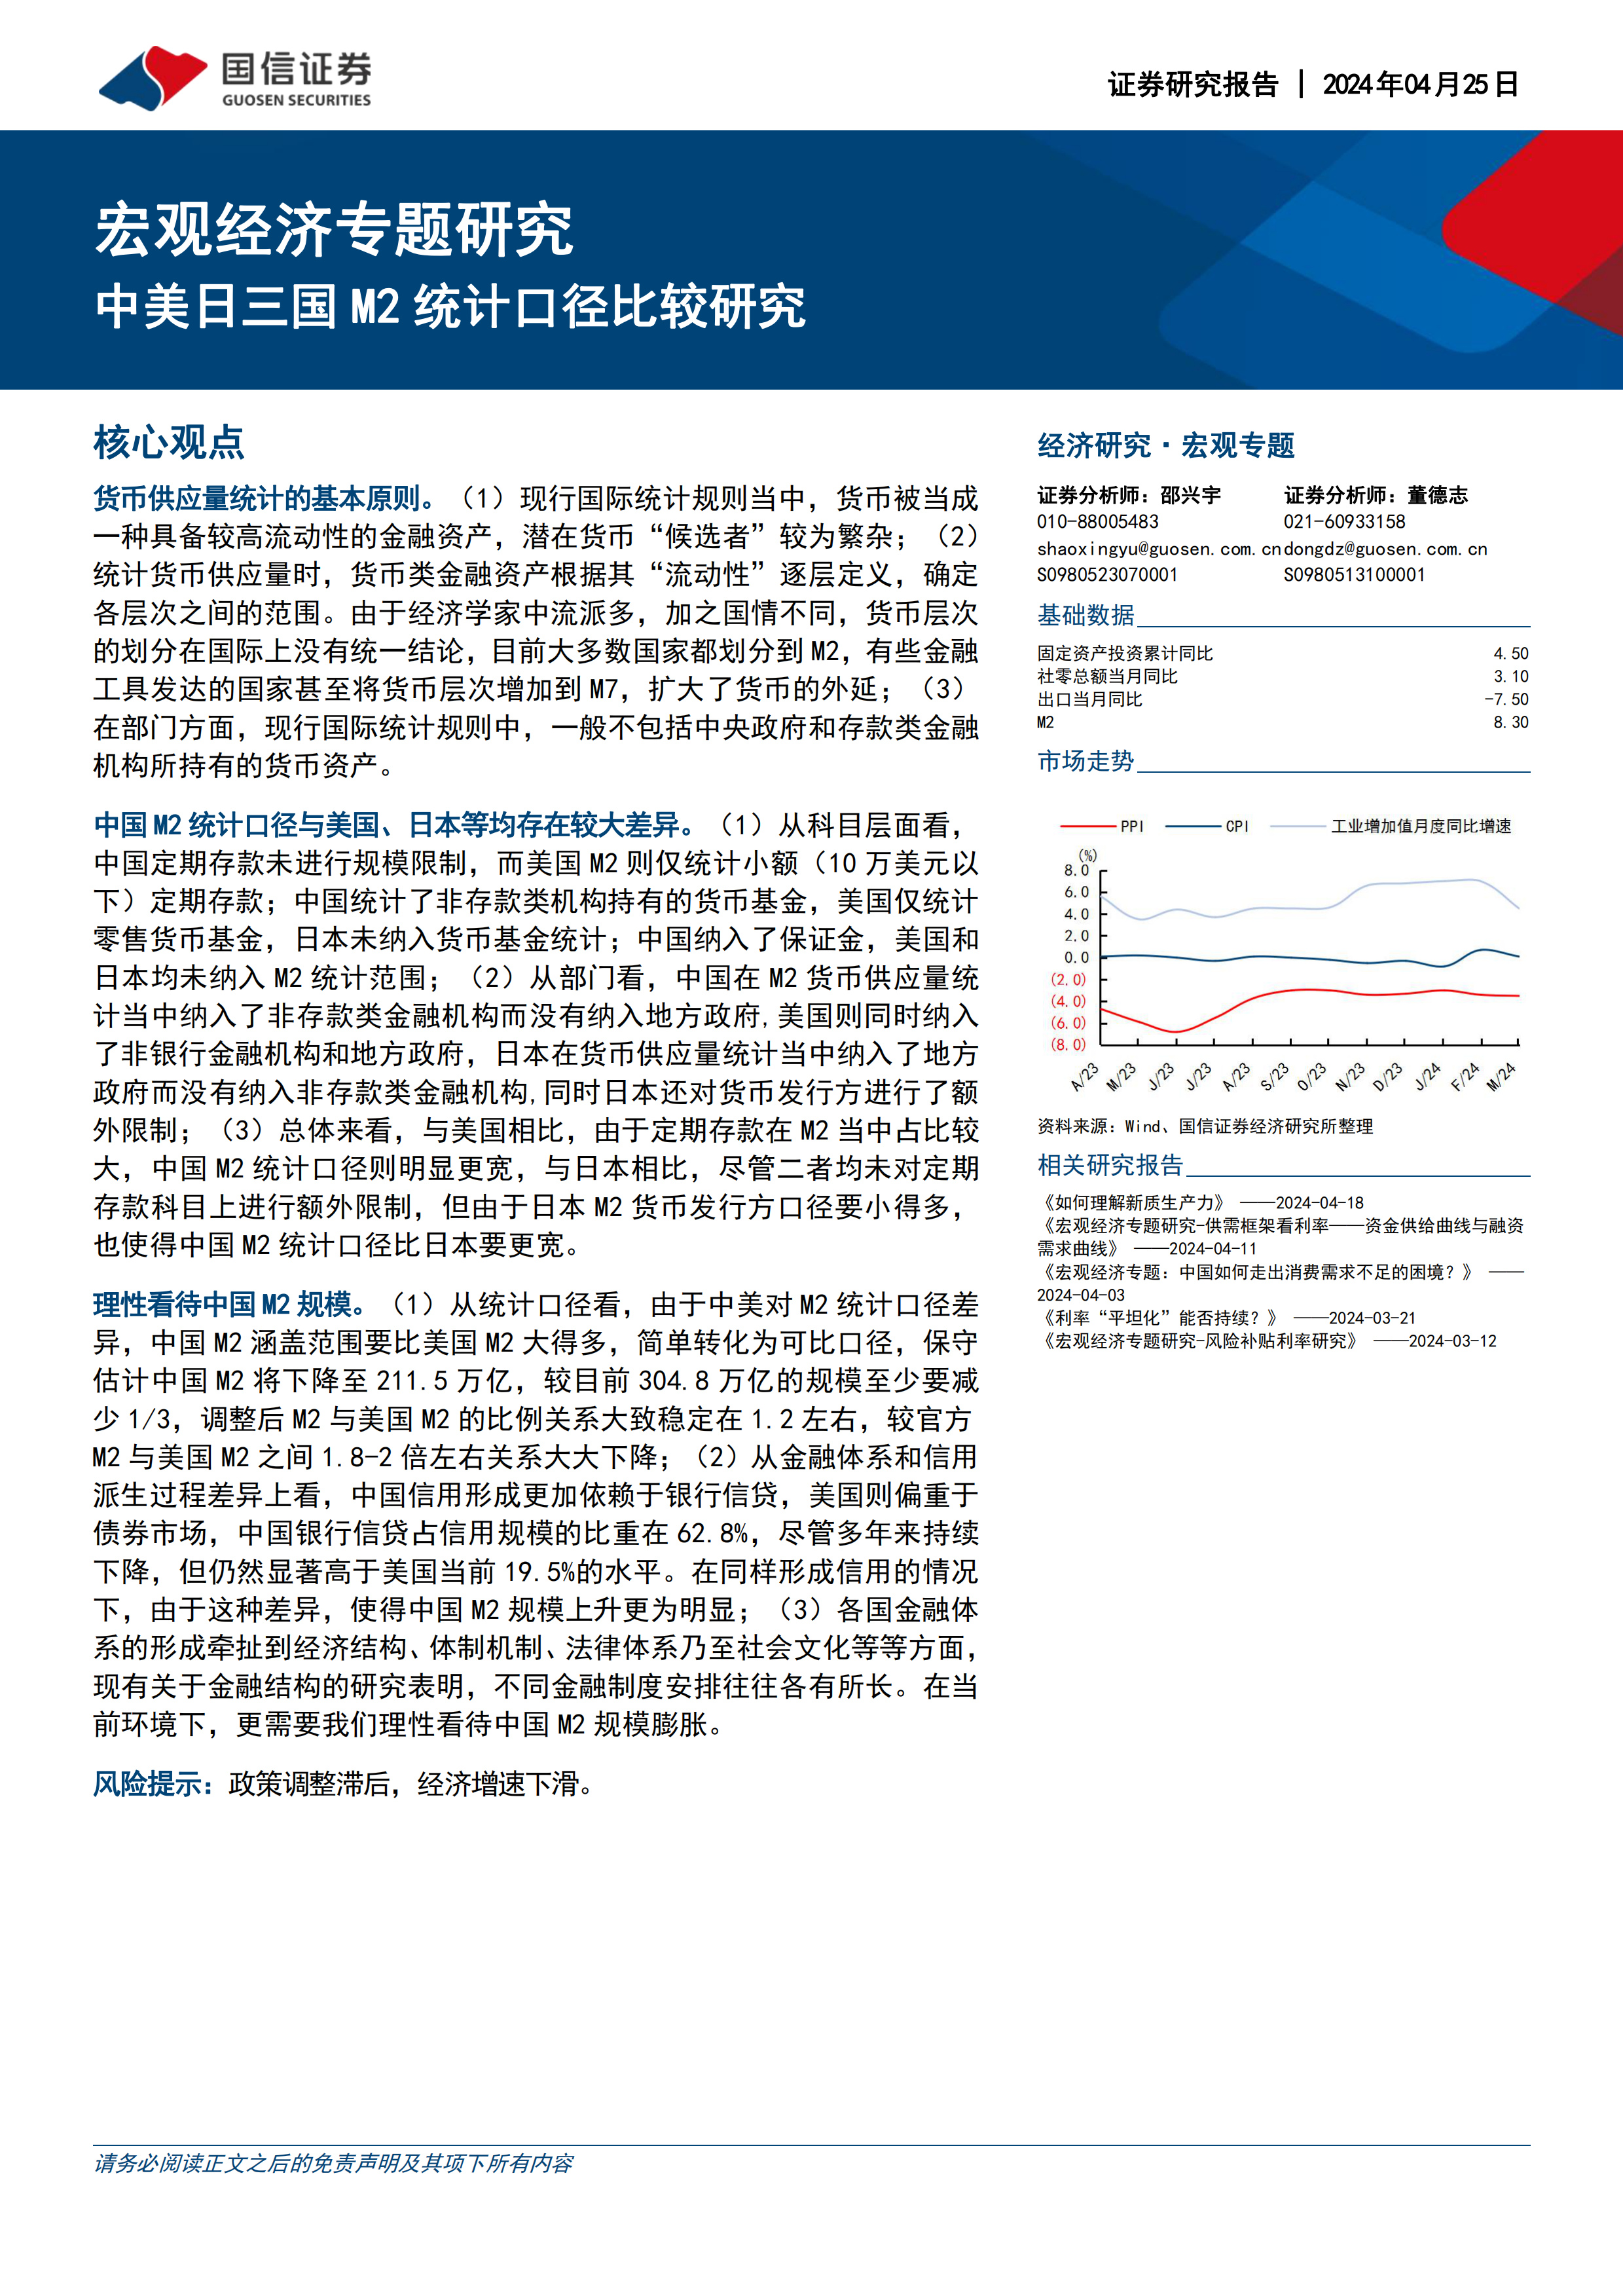 中美日三国M2统计口径比较研究-国信证券-20240425.pdf